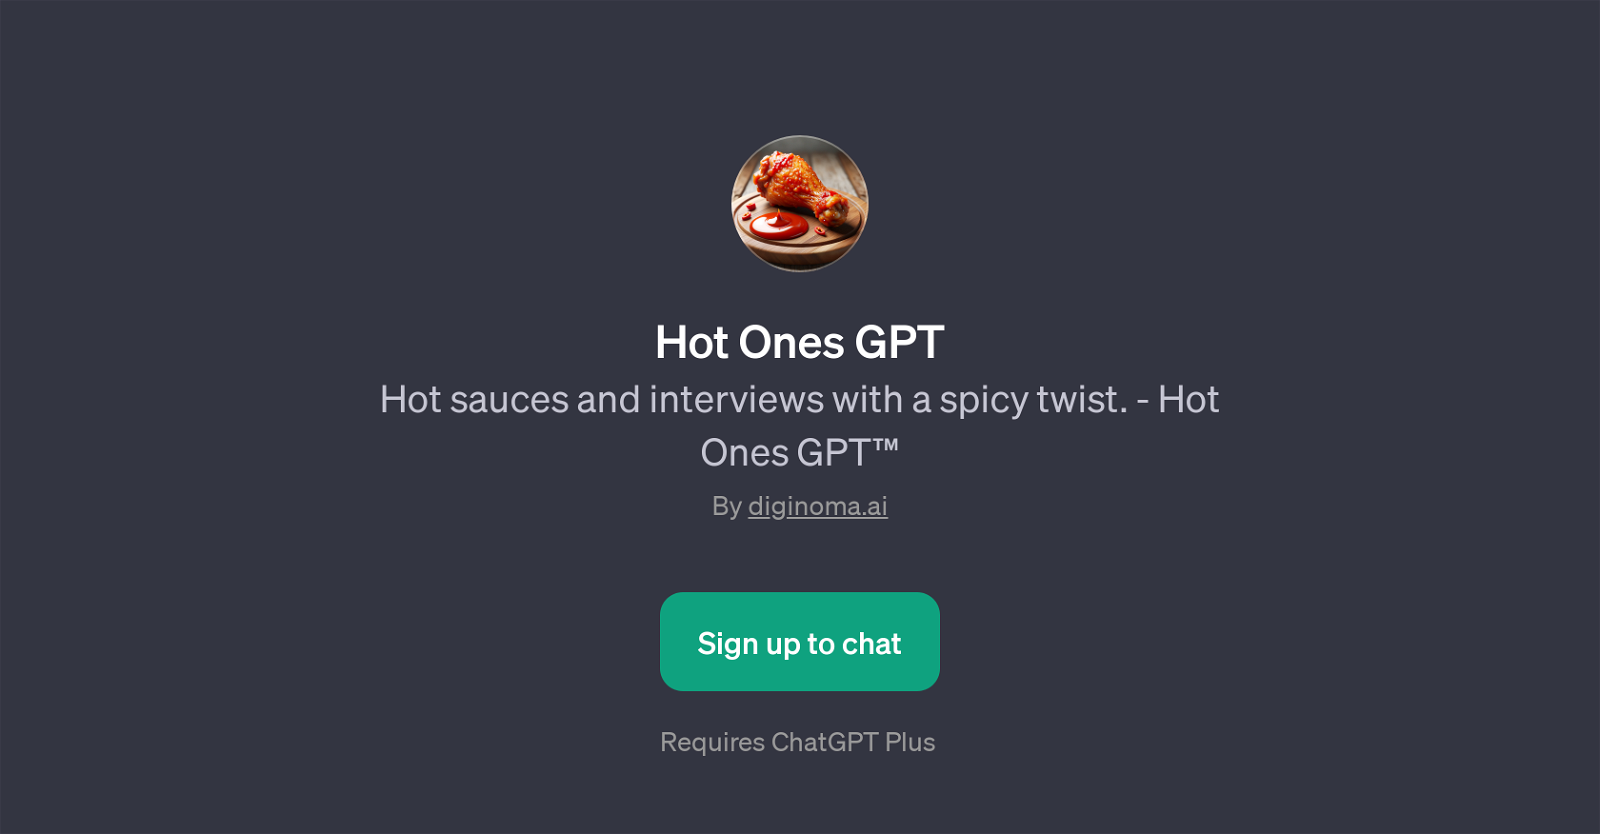 Hot Ones GPT website